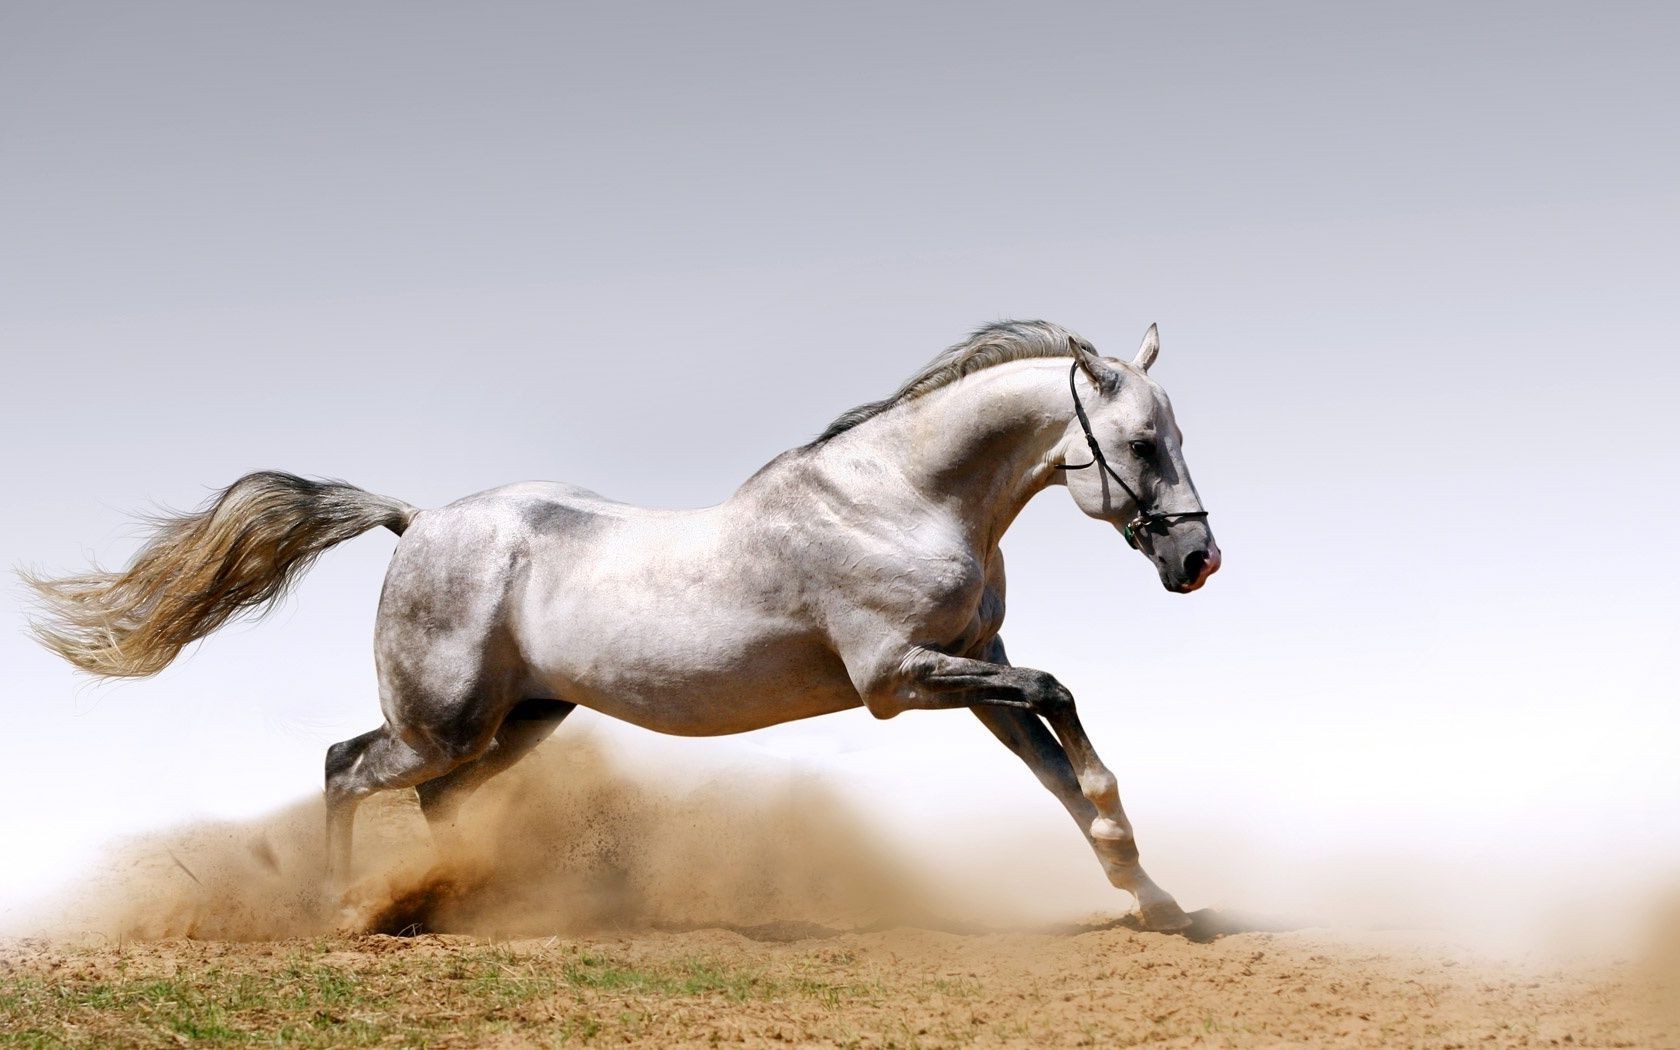 лошади лошадь конница млекопитающее маре жеребец конный коневодство животное мане ферма действие быстро пони сидит один пастбище скоко трава свобода